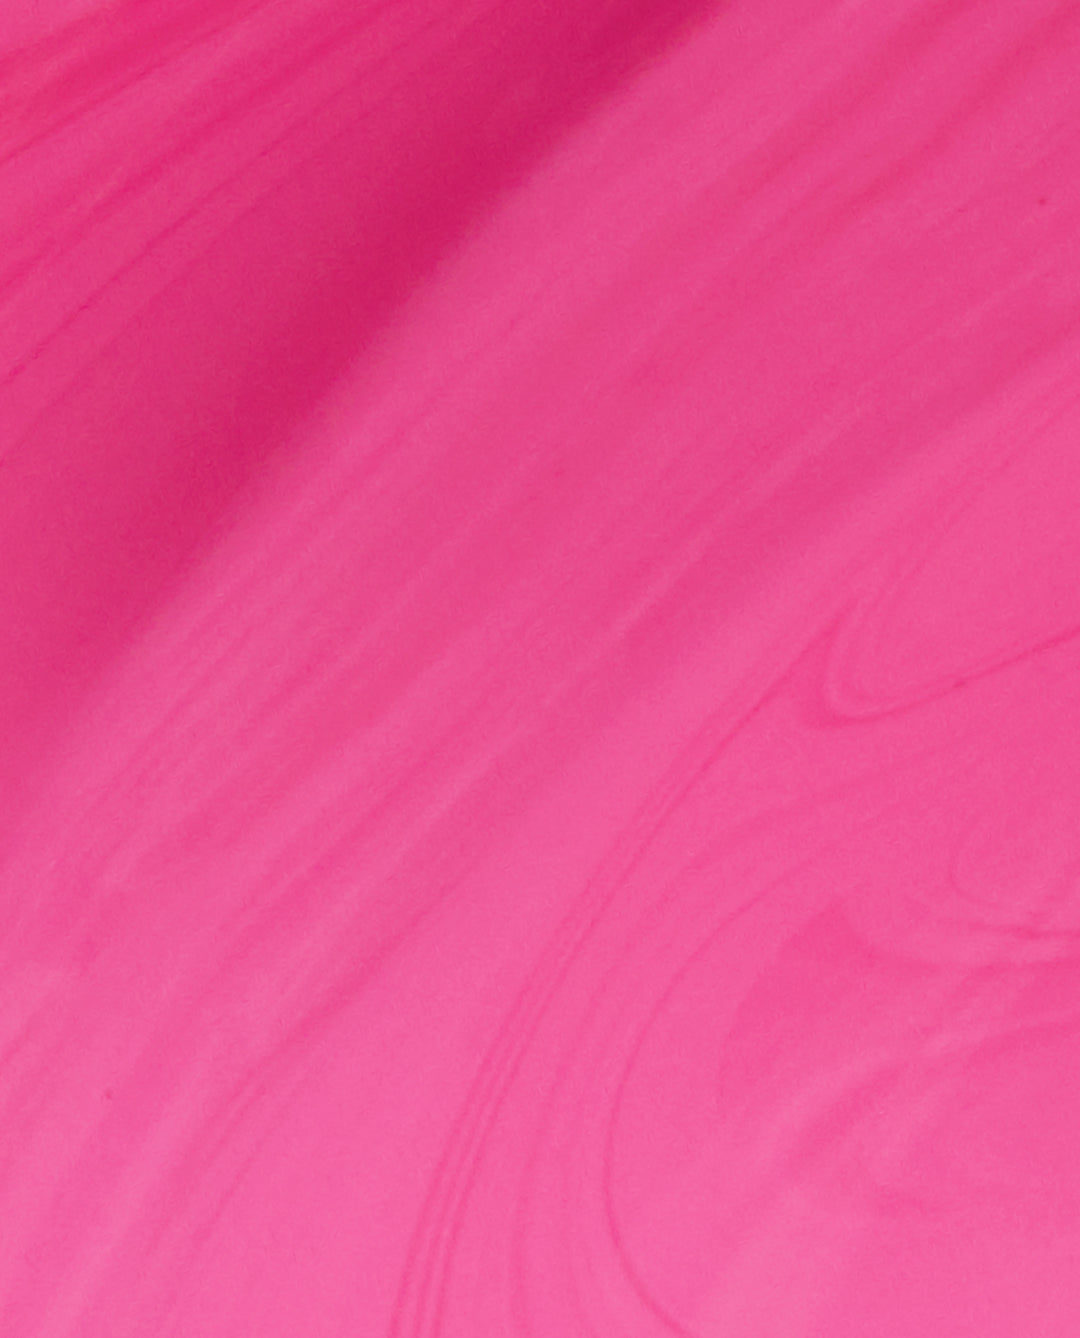 OPI Shorts Story Pink Nail Polish Brush Swatch